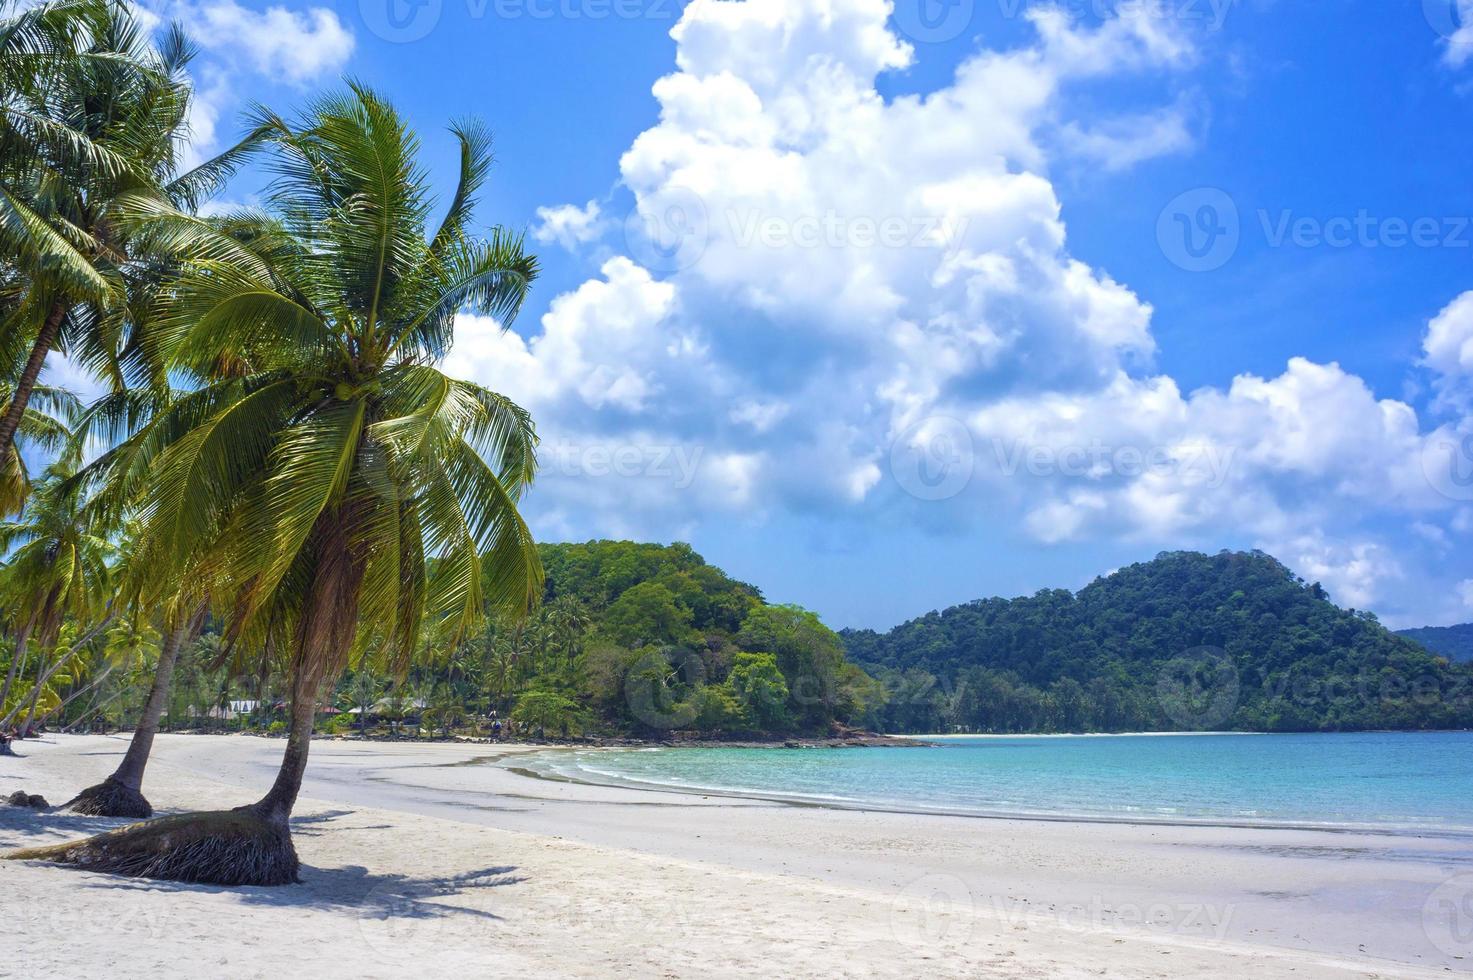 complexe tropical avec lagon verdoyant et palmier photo